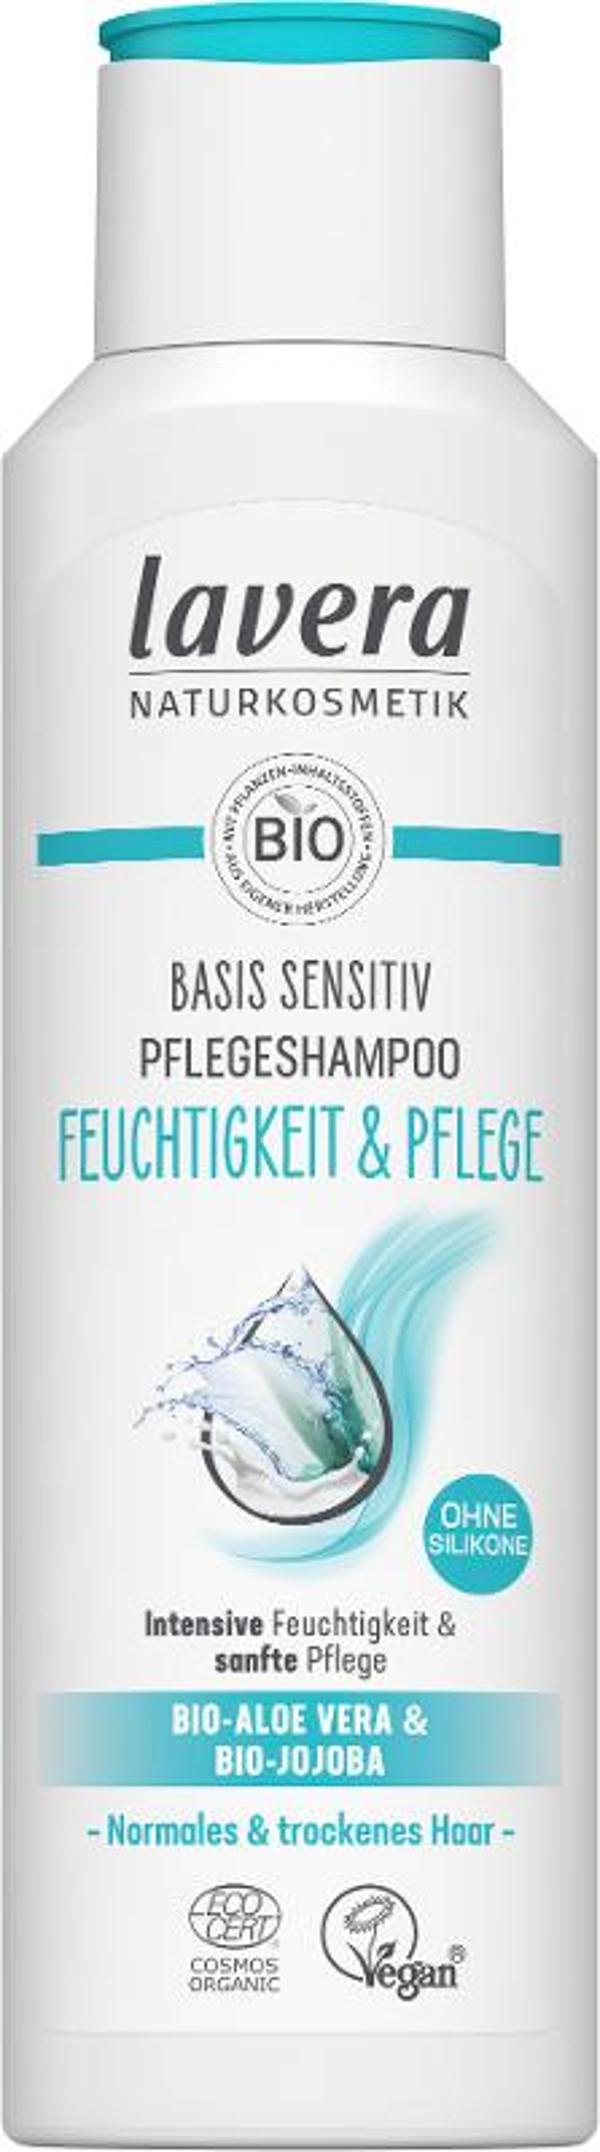 Produktfoto zu Lavera Shampoo basis sensitiv Feuchtigkeit 250ml